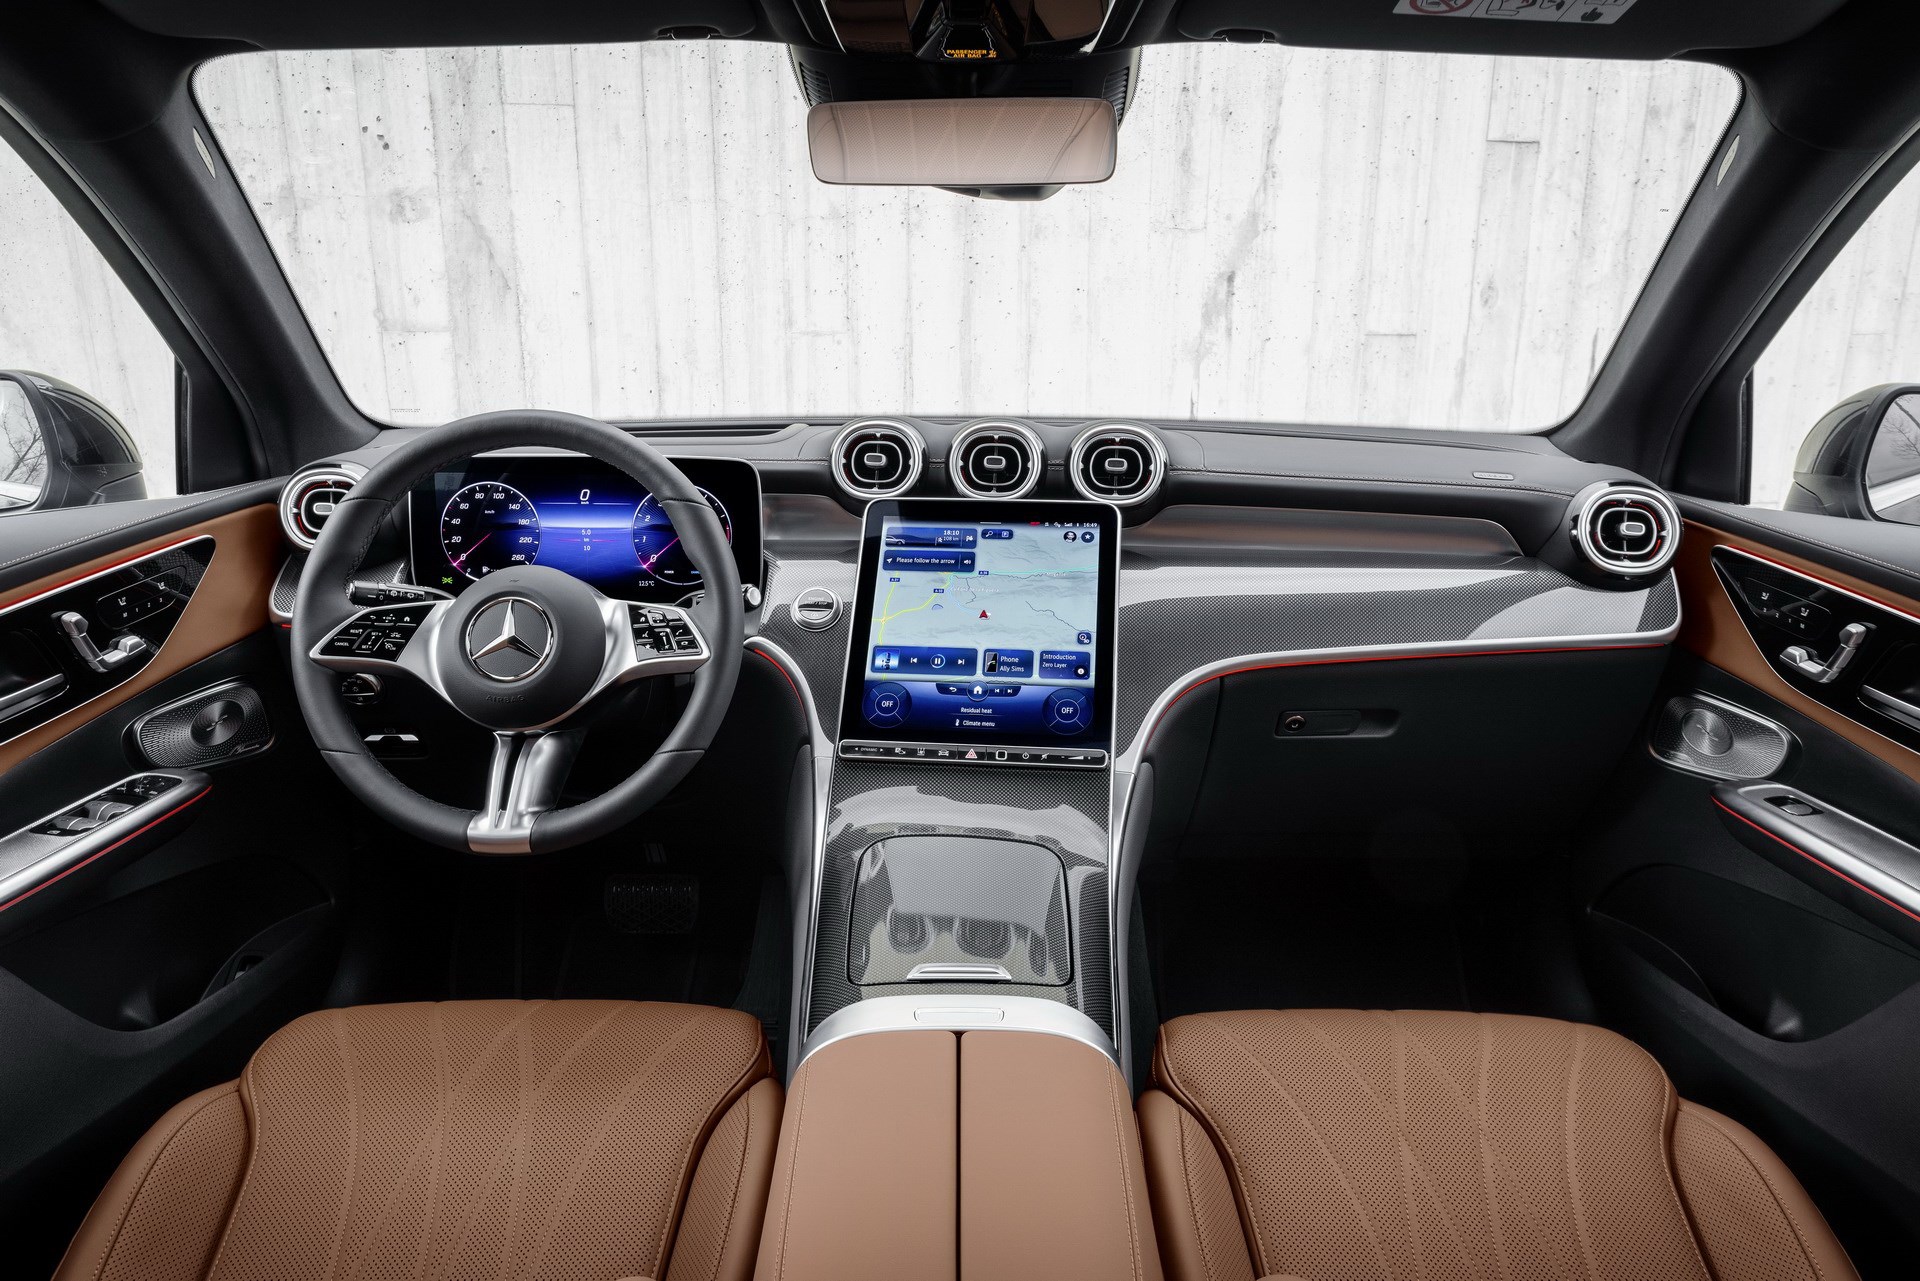 2022 Mercedes-Benz GLC tanıtıldı: İşte tasarımı ve özellikleri